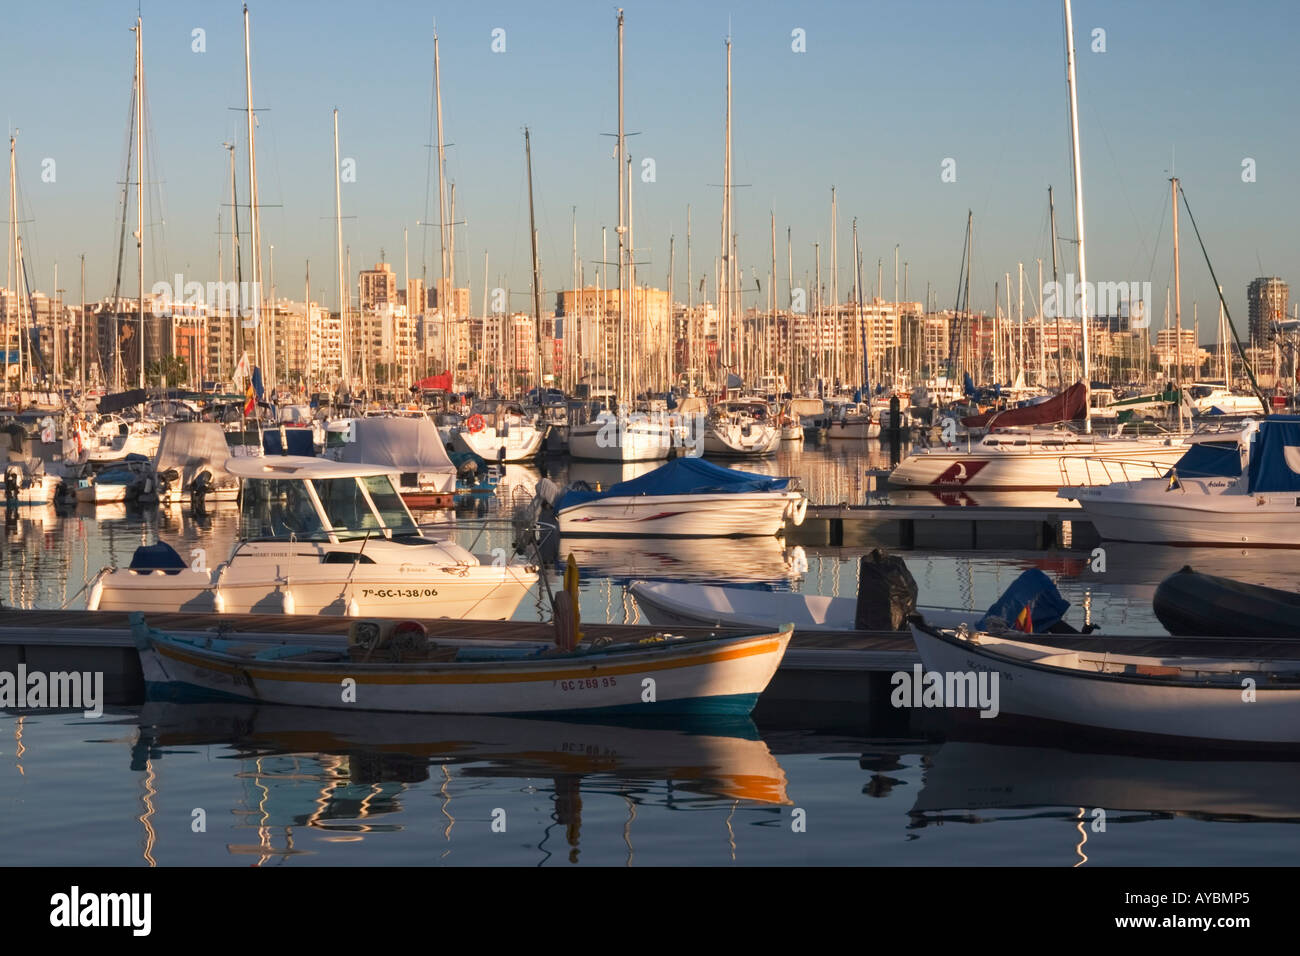 Muelle Deportivo (marina), Las Palmas, Gran Canaria Stock Photo - Alamy